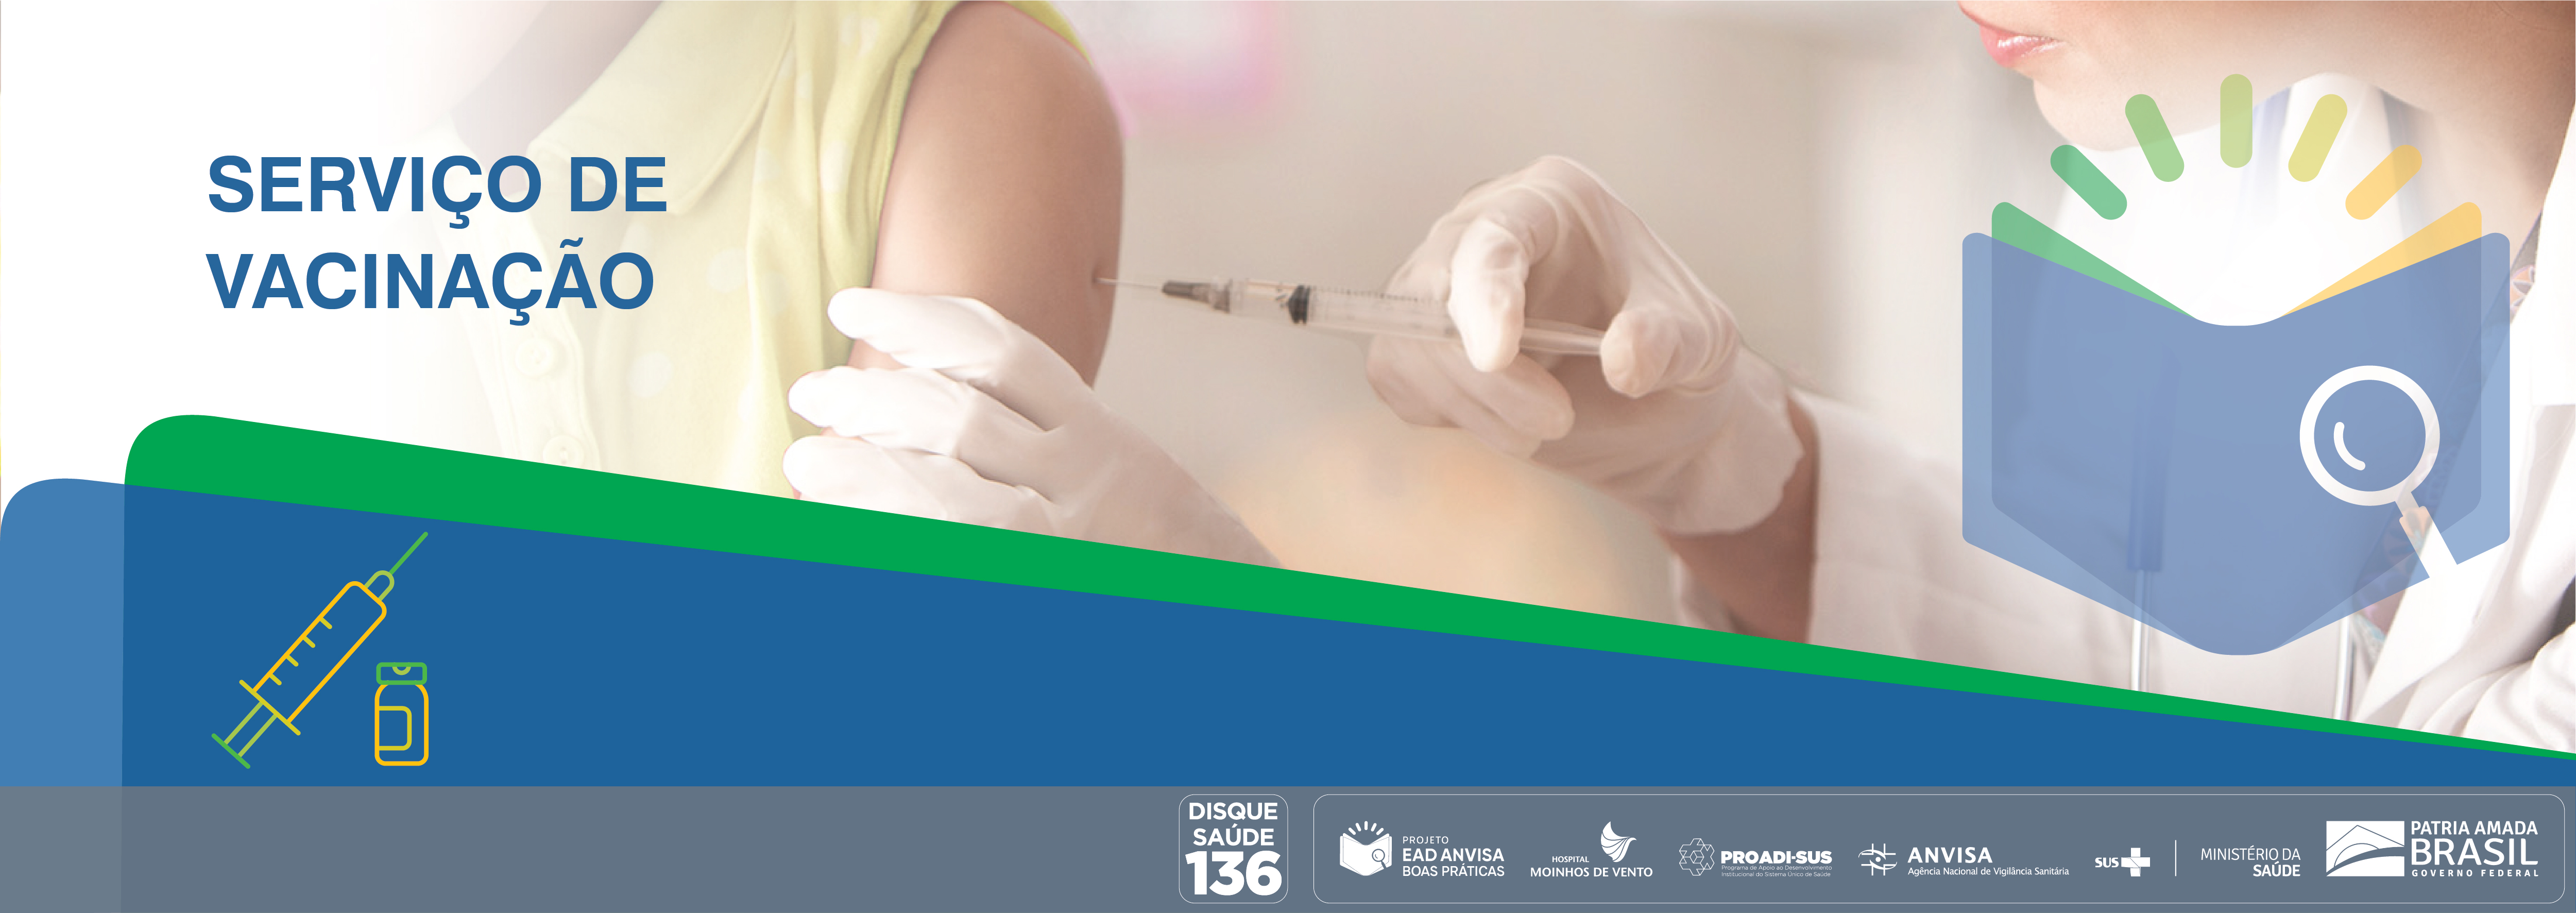 Boas Práticas em Serviços de Vacinação no Brasil Anvisa_2020_BPSVB